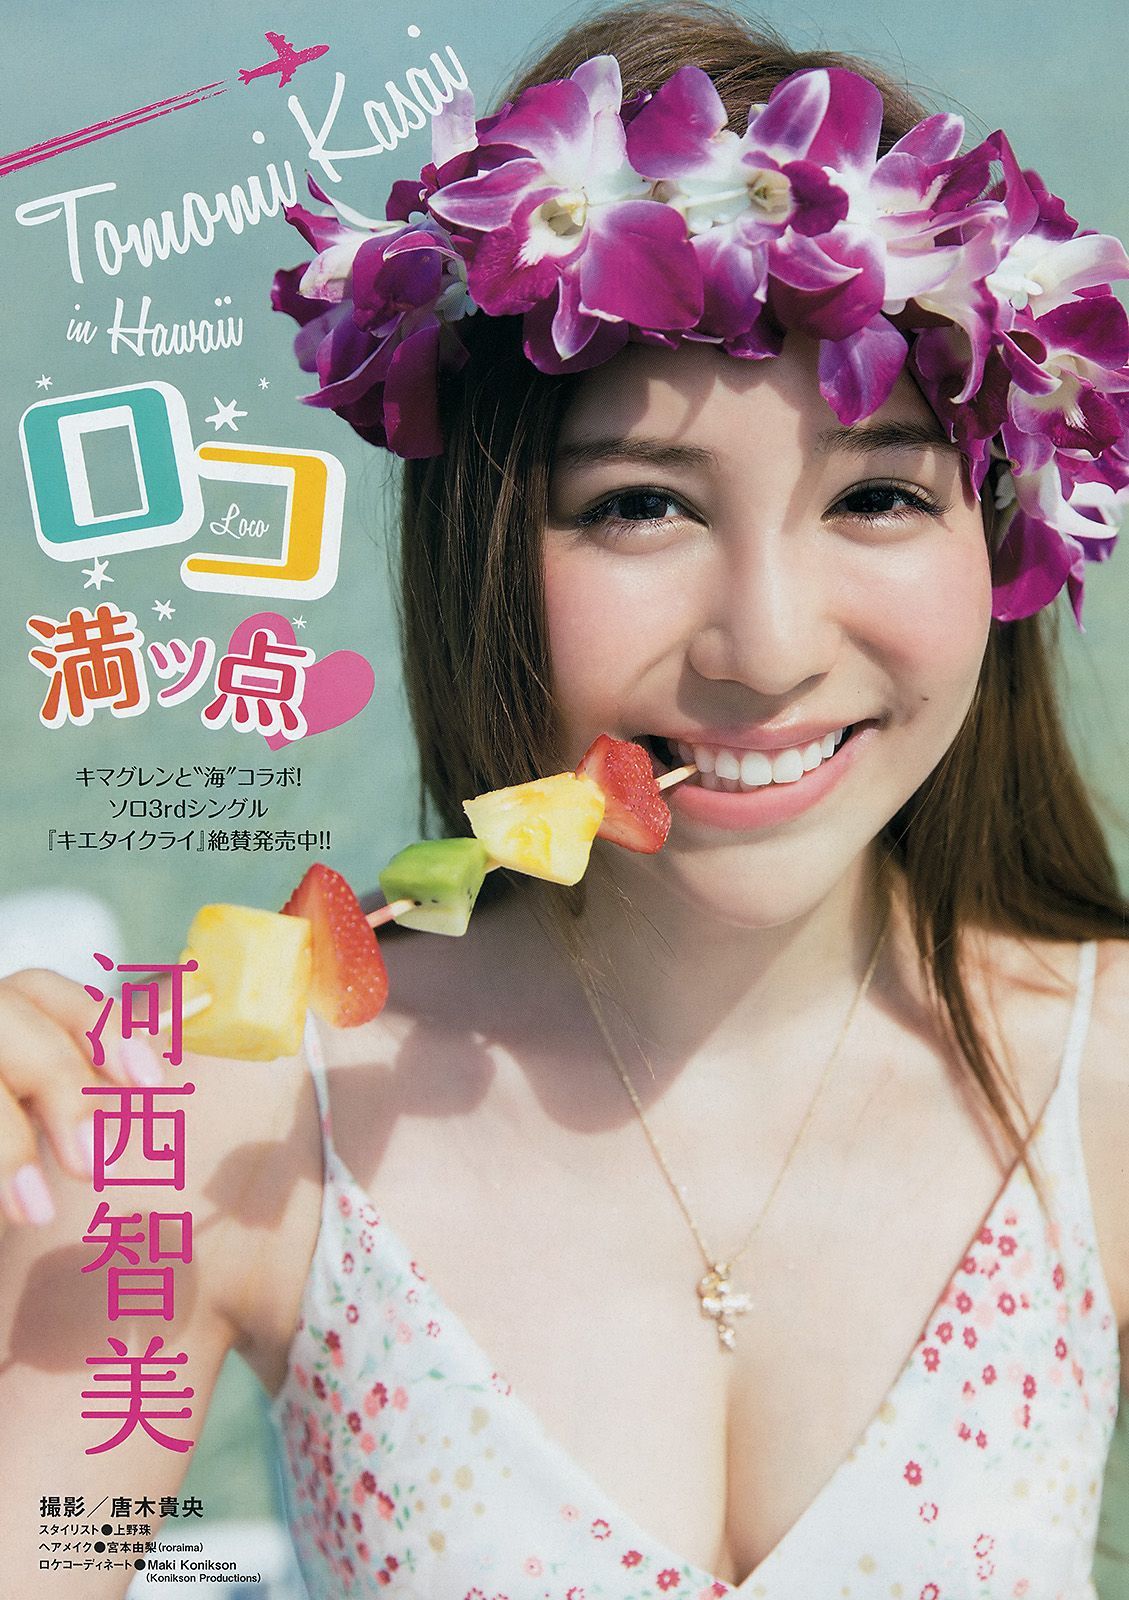 [Young Magazine]杂志:河西智美无圣光私房照片在线浏览(10P)